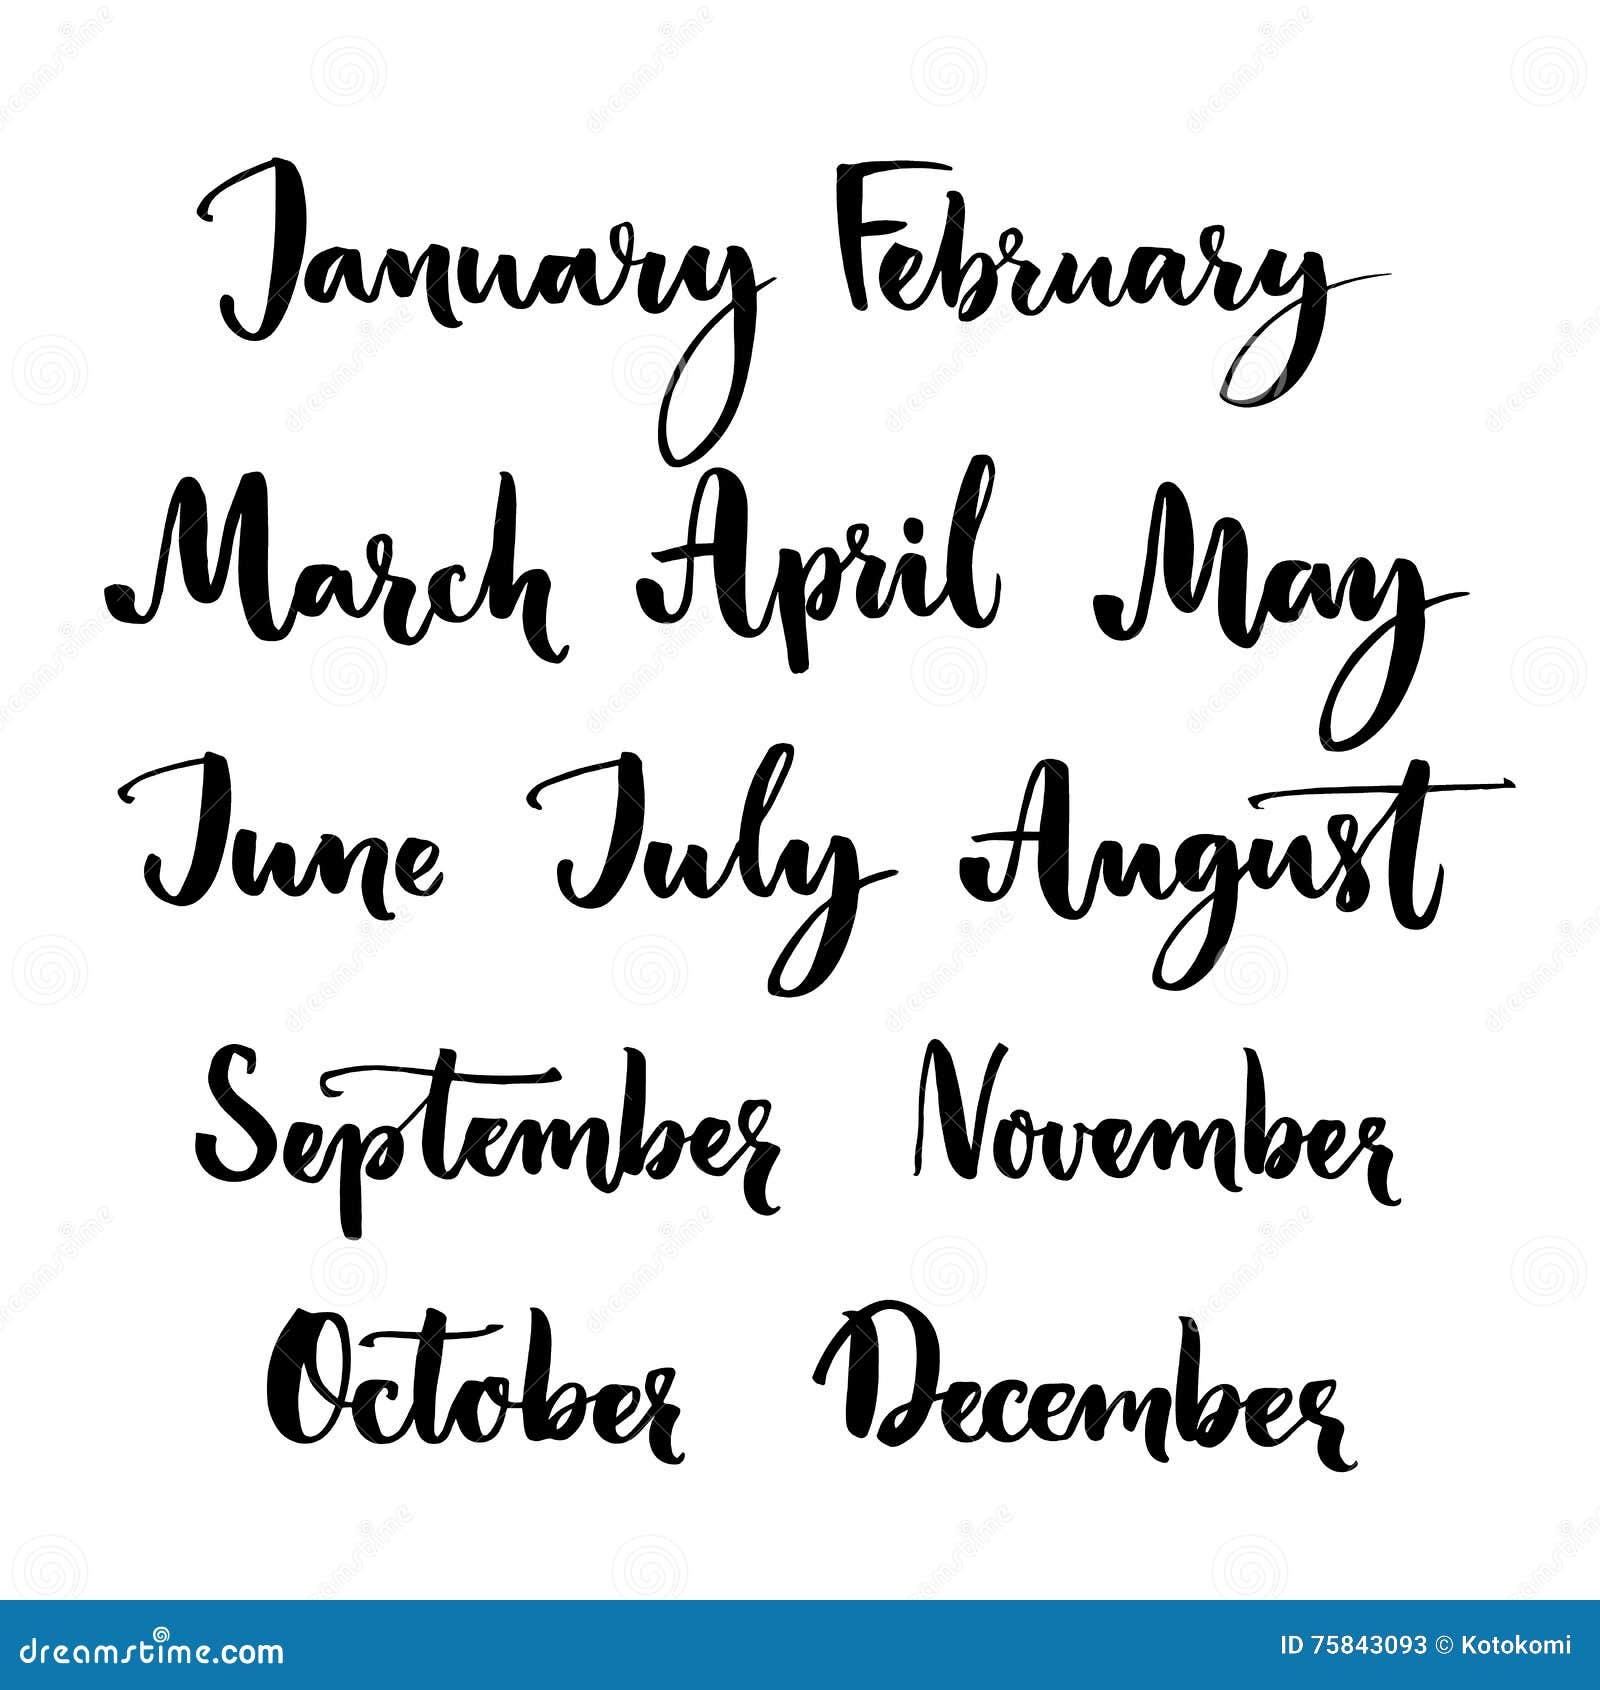 janeiro, fevereiro, março, abril, maio, junho, julho, agosto, stembro,  outubro, novembro, dezembro.